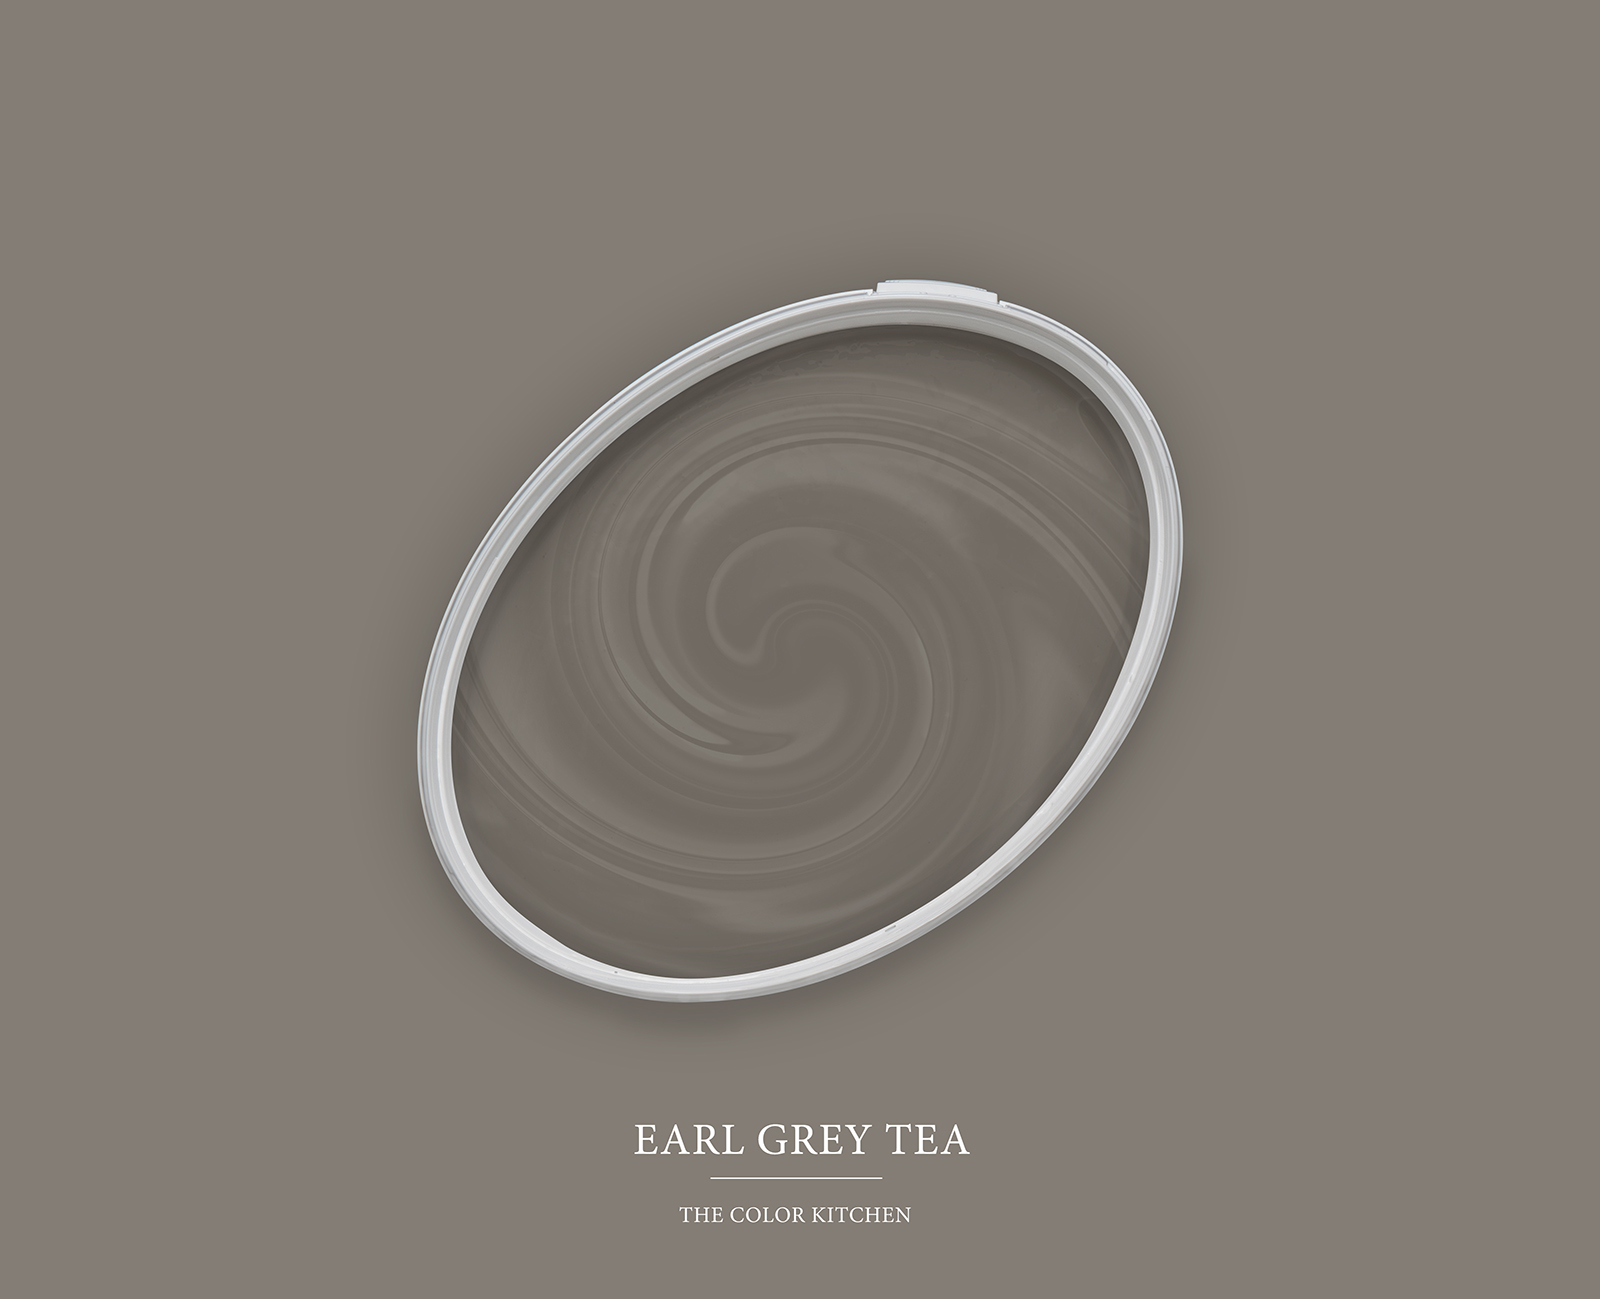 Muurverf TCK1021 »Earl Grey Tea« in groenachtig taupe – 5.0 liter
